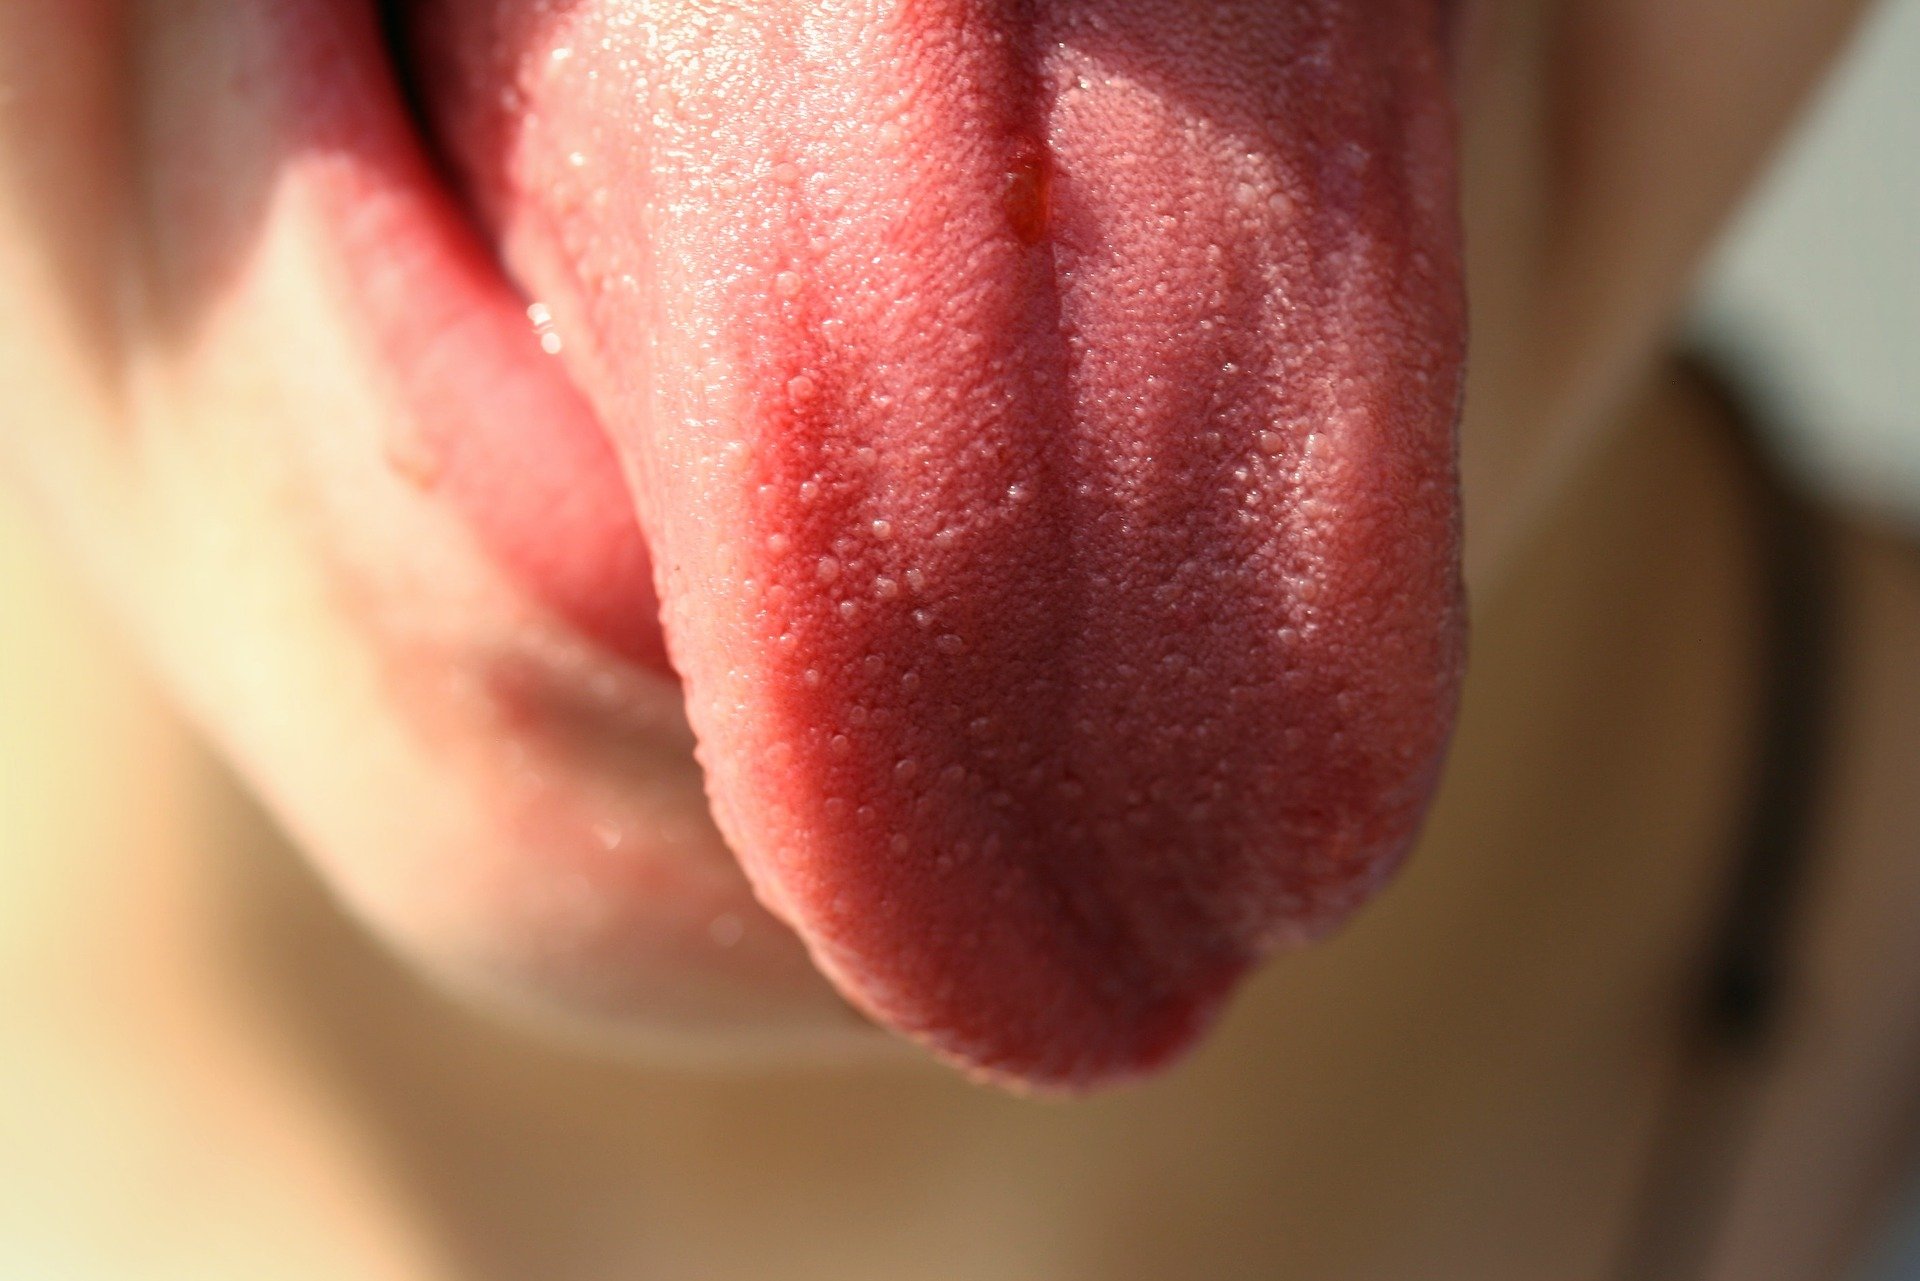 cracks in tongue